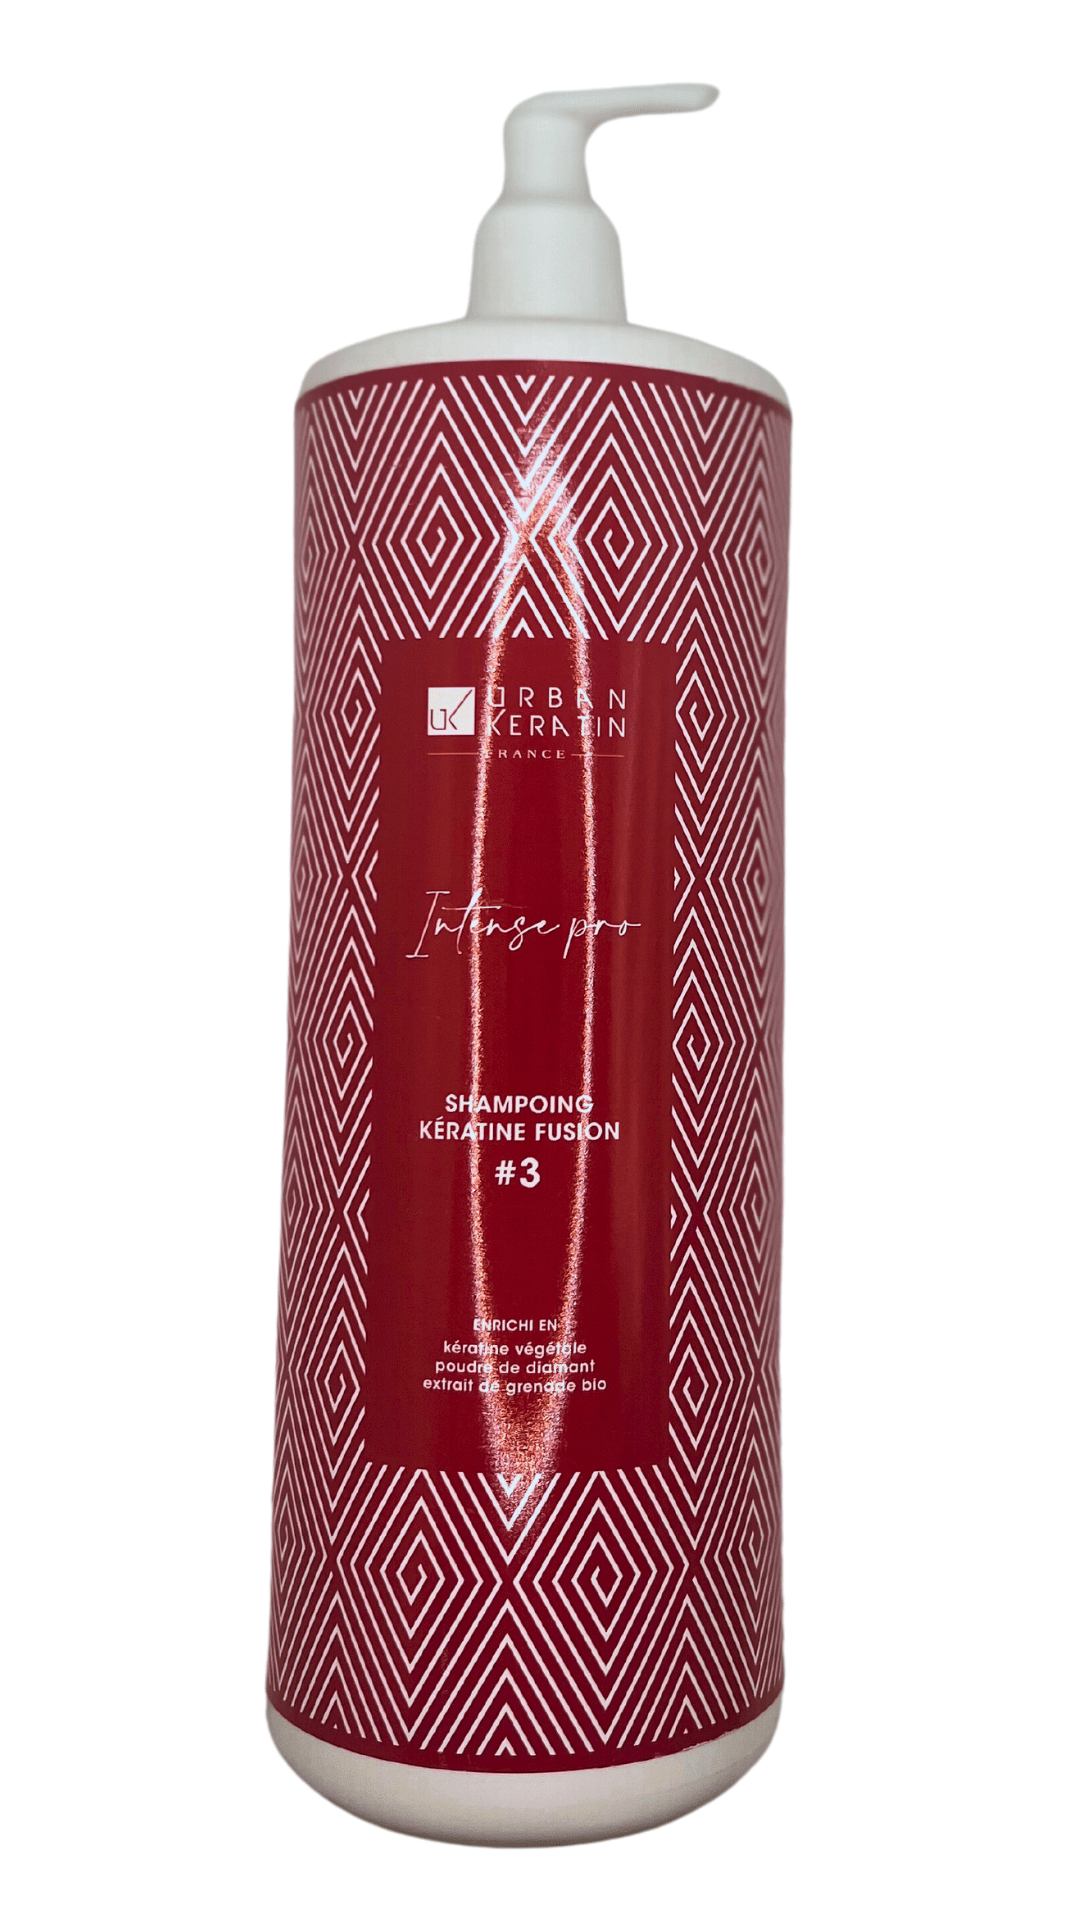 URBAN KERATINE - Keratin fusion shampoo